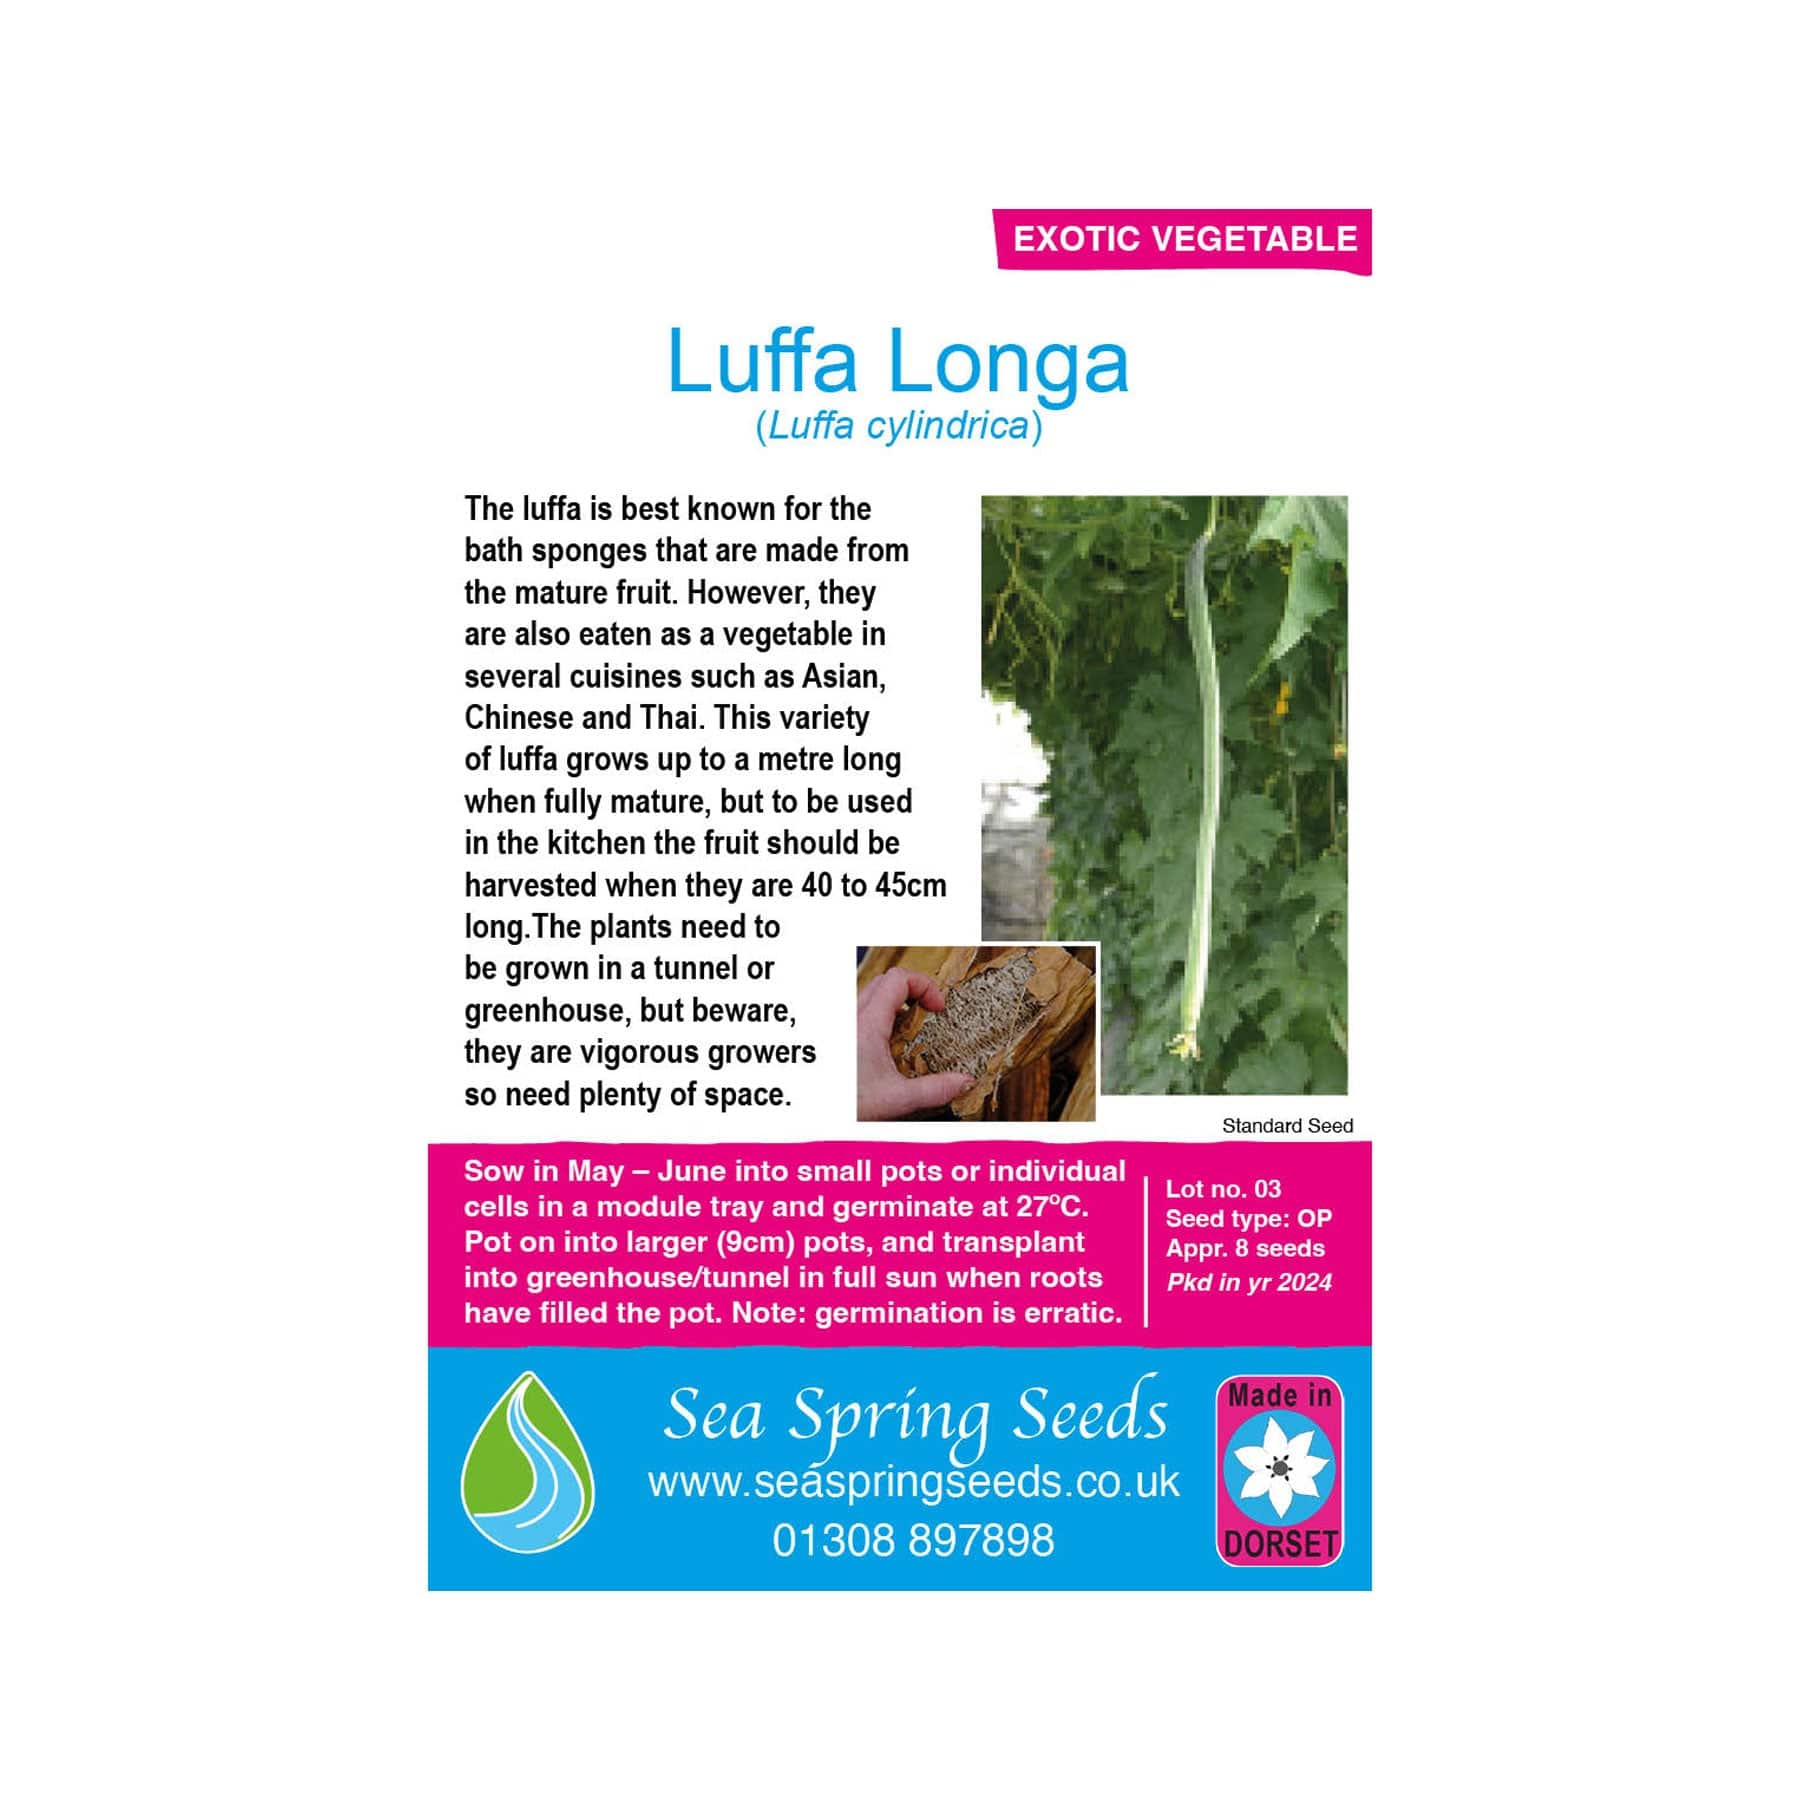 Luffa longa seeds